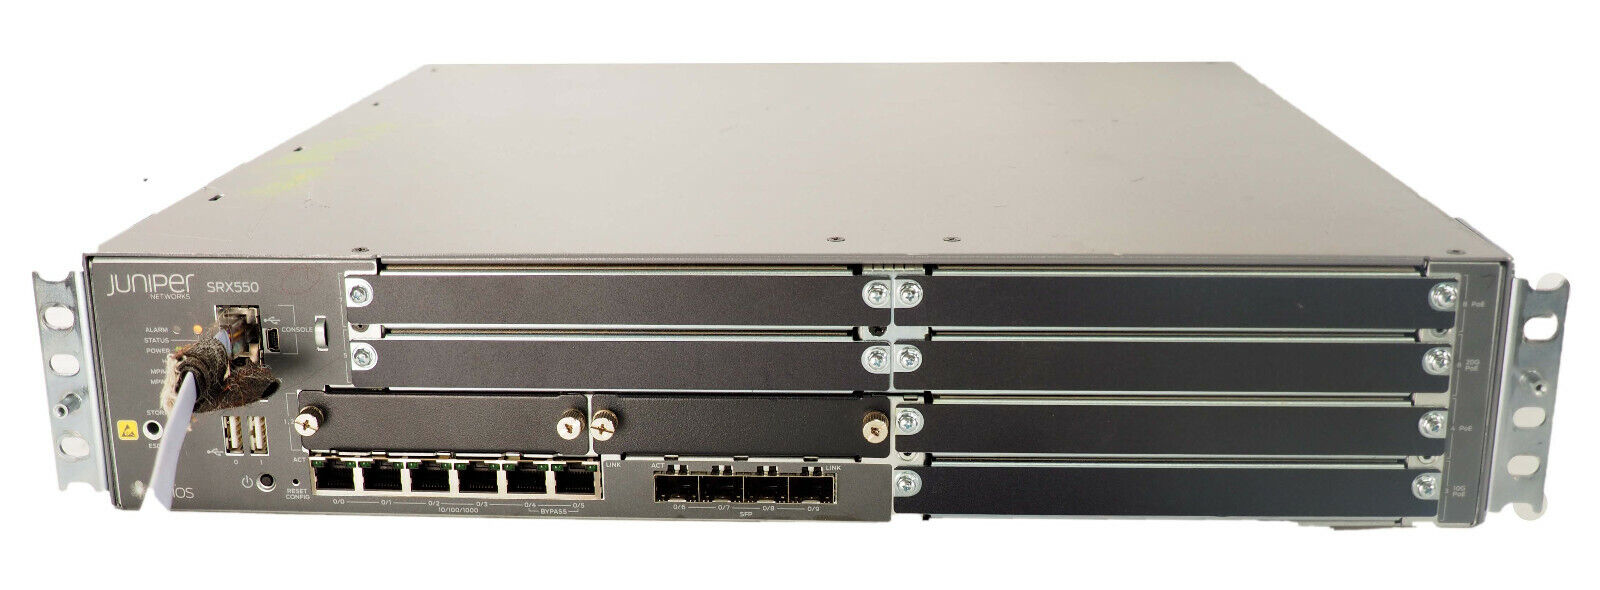 Juniper SRX550 SRX550-645AP Services Gateway Firewall Security Appliance 